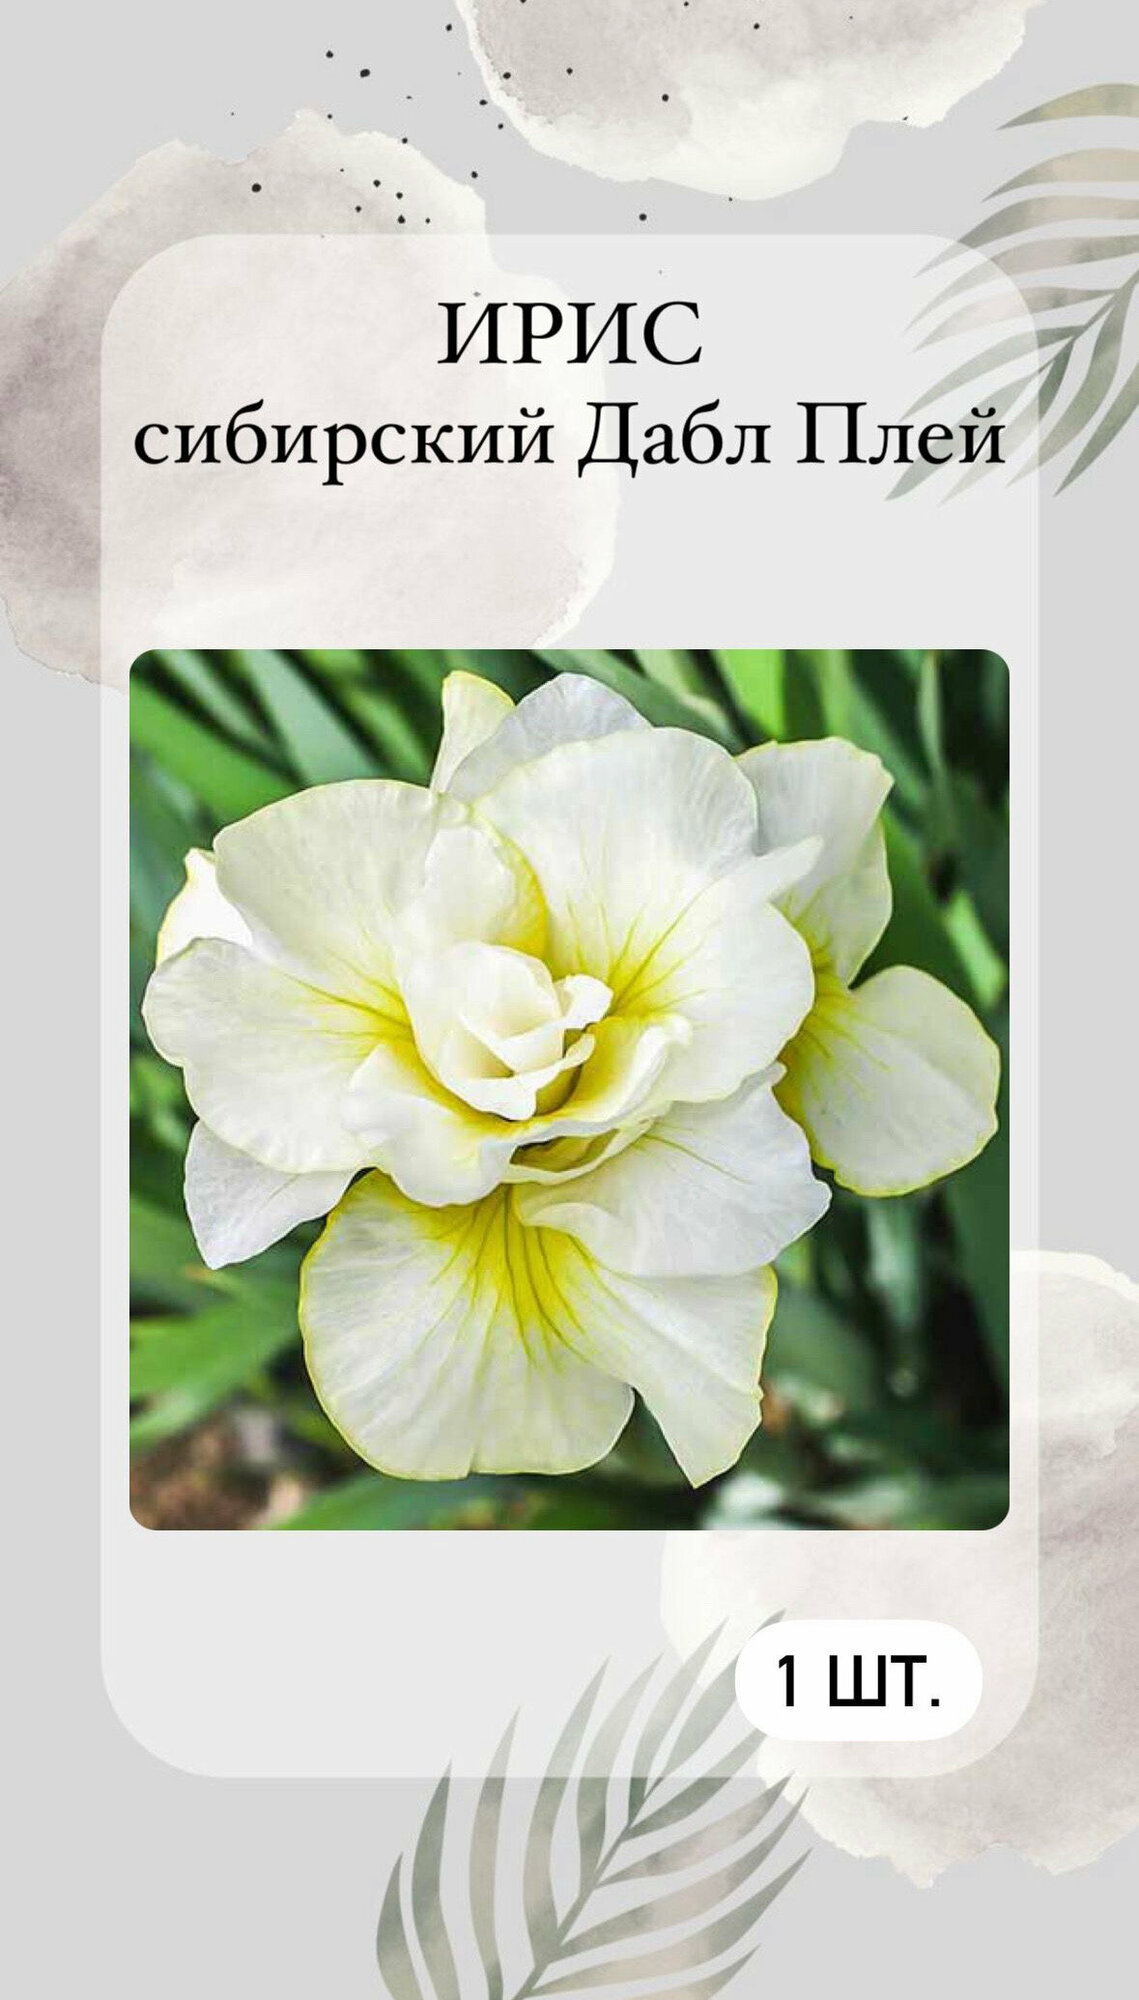 Ирис корневой Дабл Плей многолетние цветы 1 шт